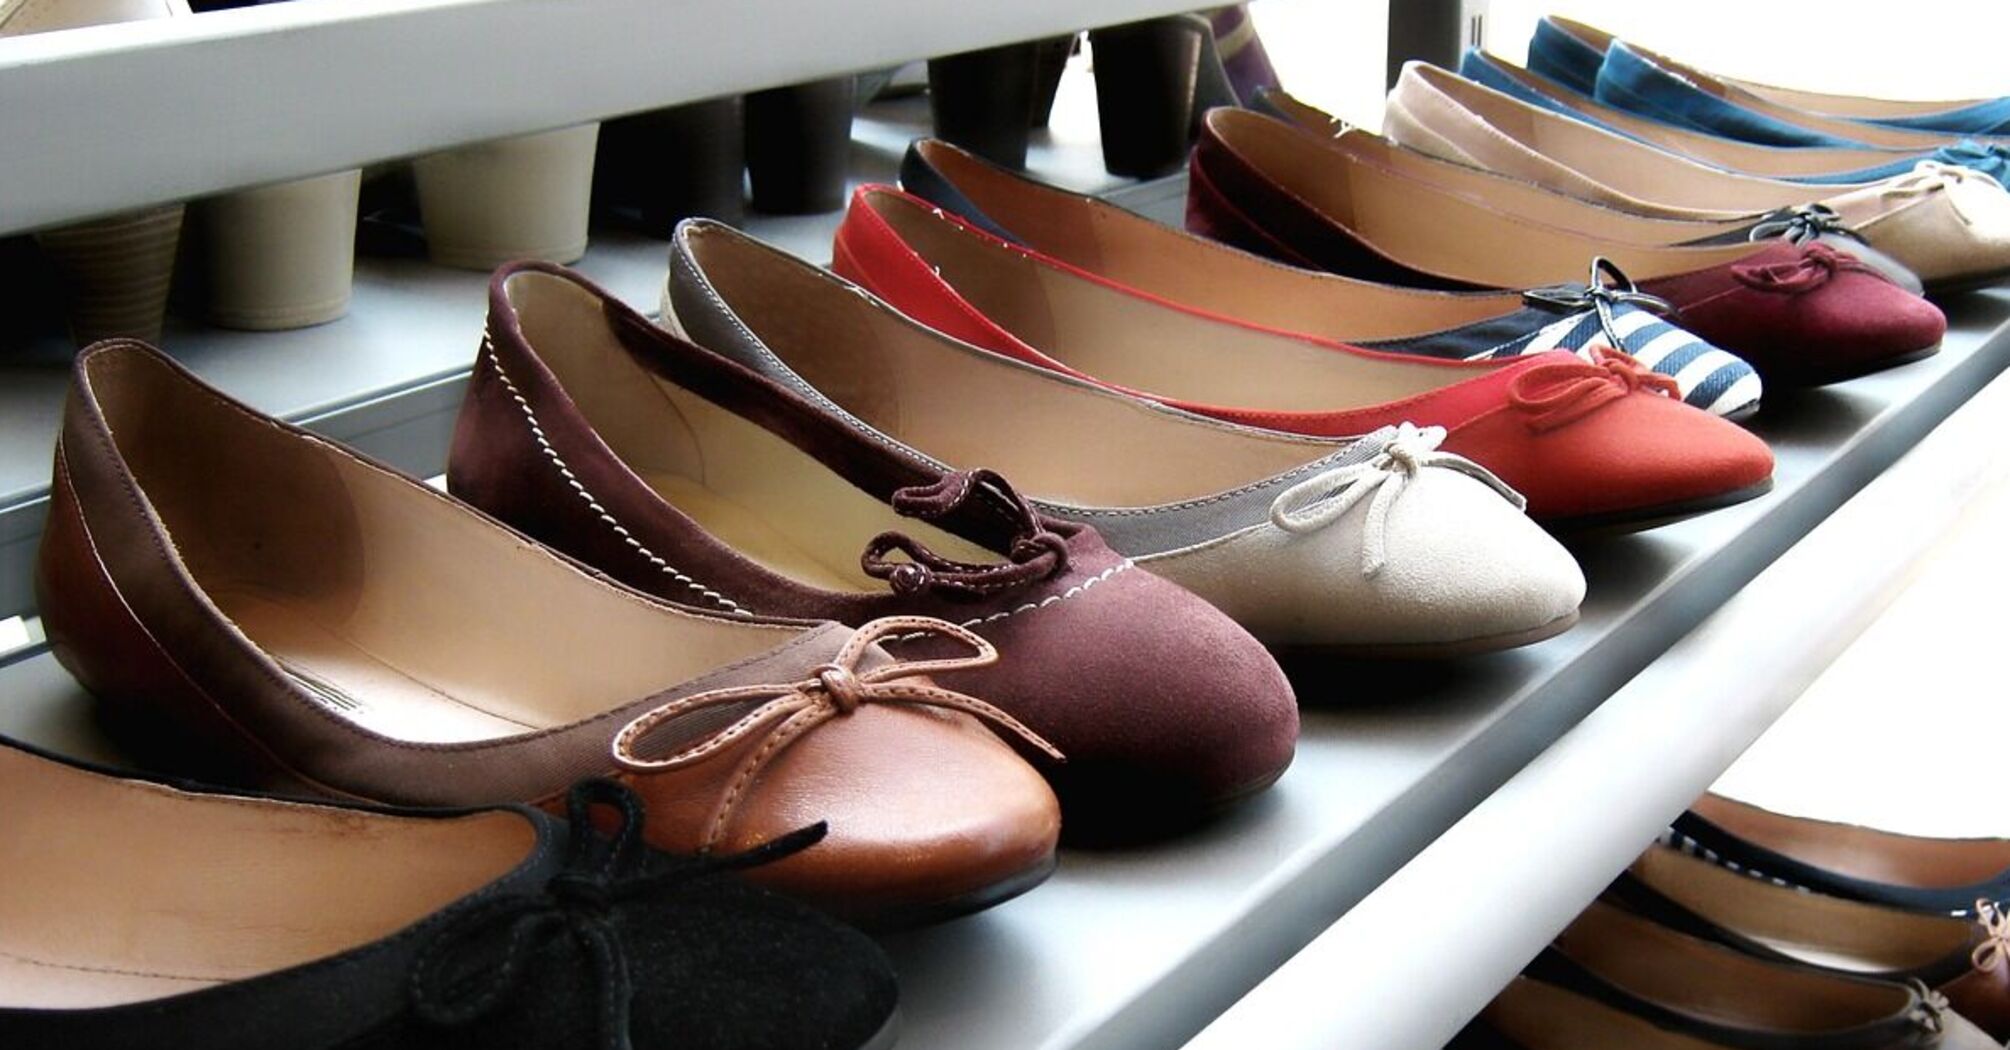 Не робіть з себе 'сіру мишку': яке взуття не варто носити жінкам після 50 років